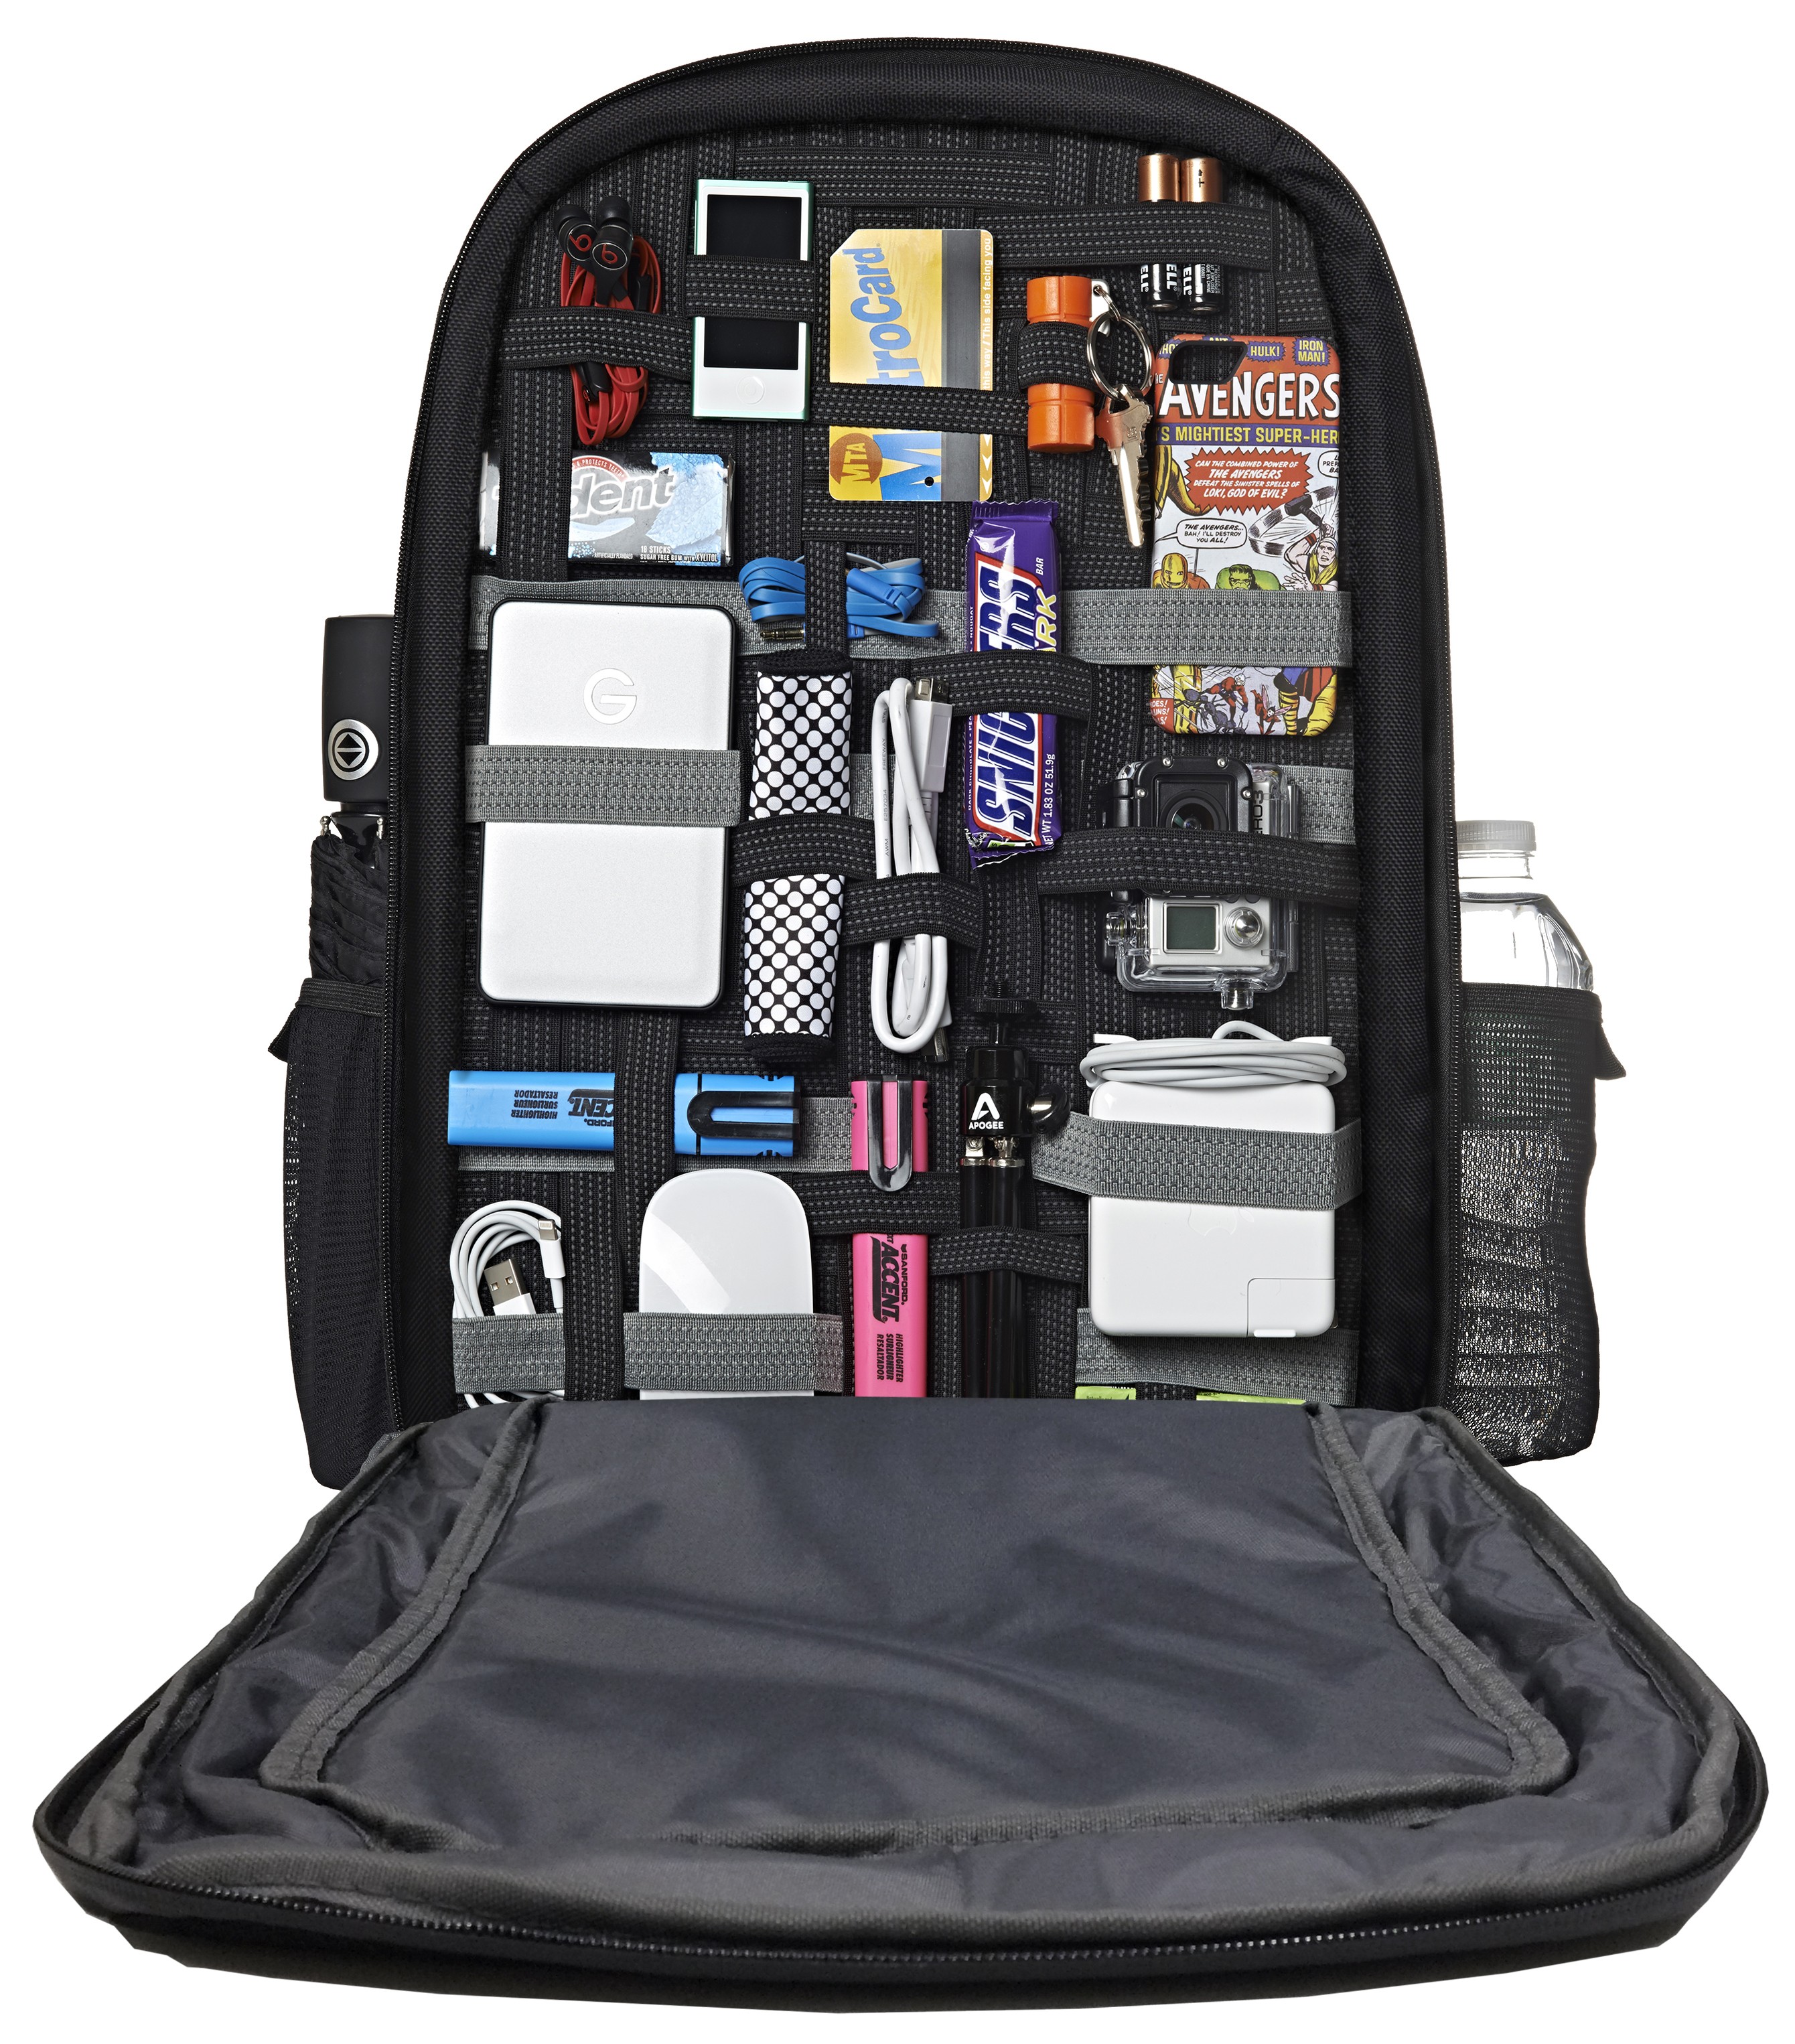 Case Logic Laptop Backpack | Case Logic | United States